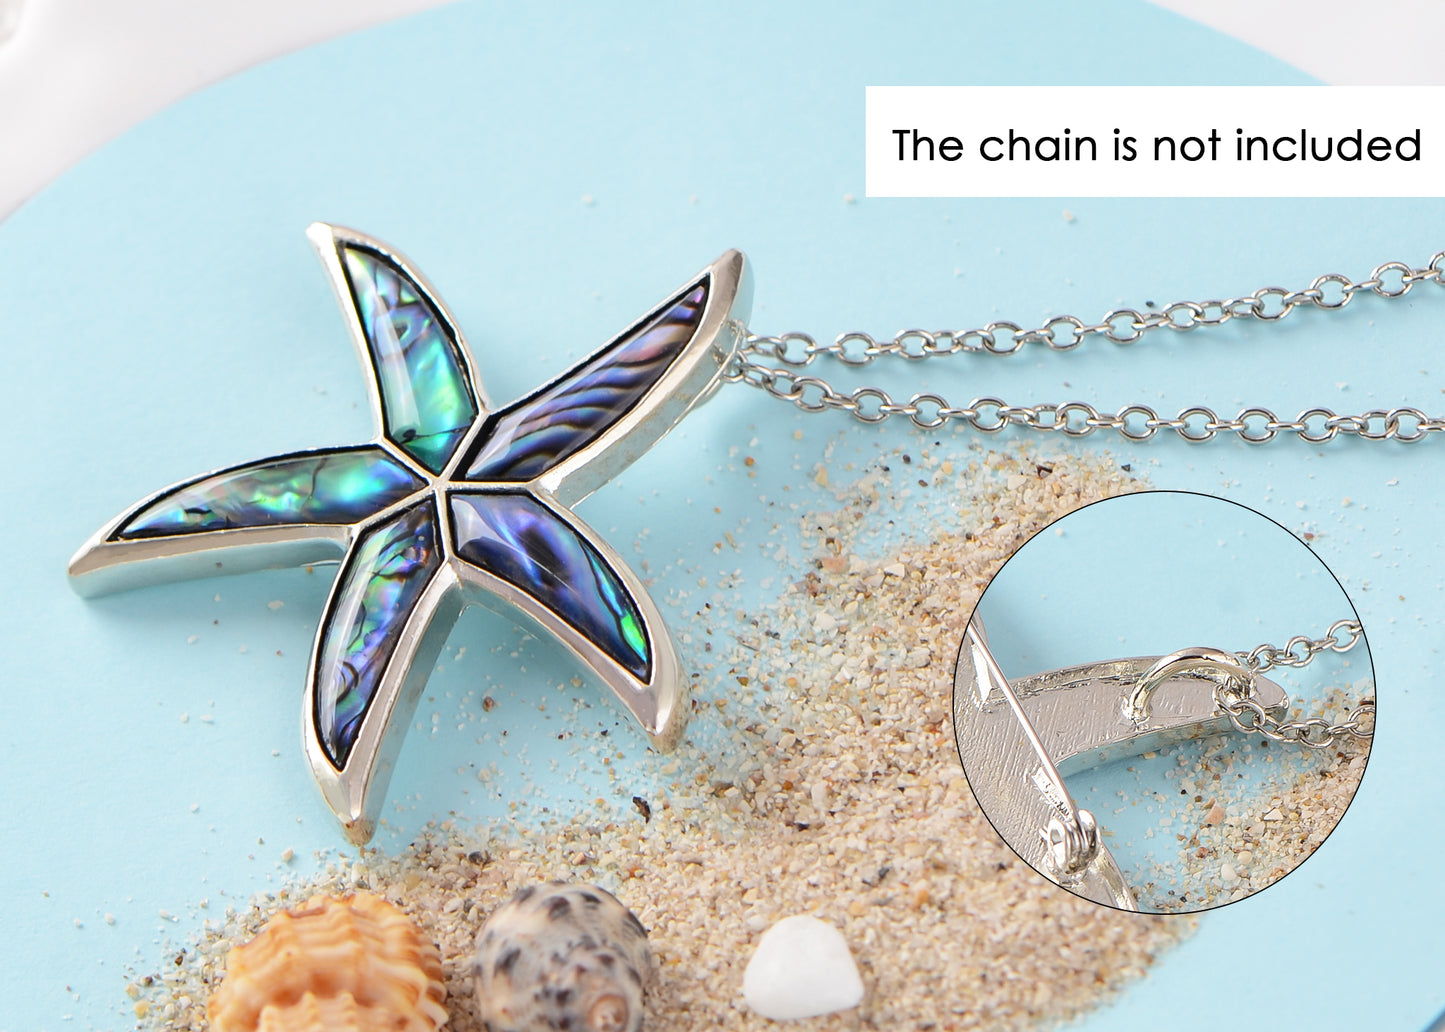 Alilang Silver Tone Abalone Shell Starfish Sea Star Animal Brooch Pin & Pendant